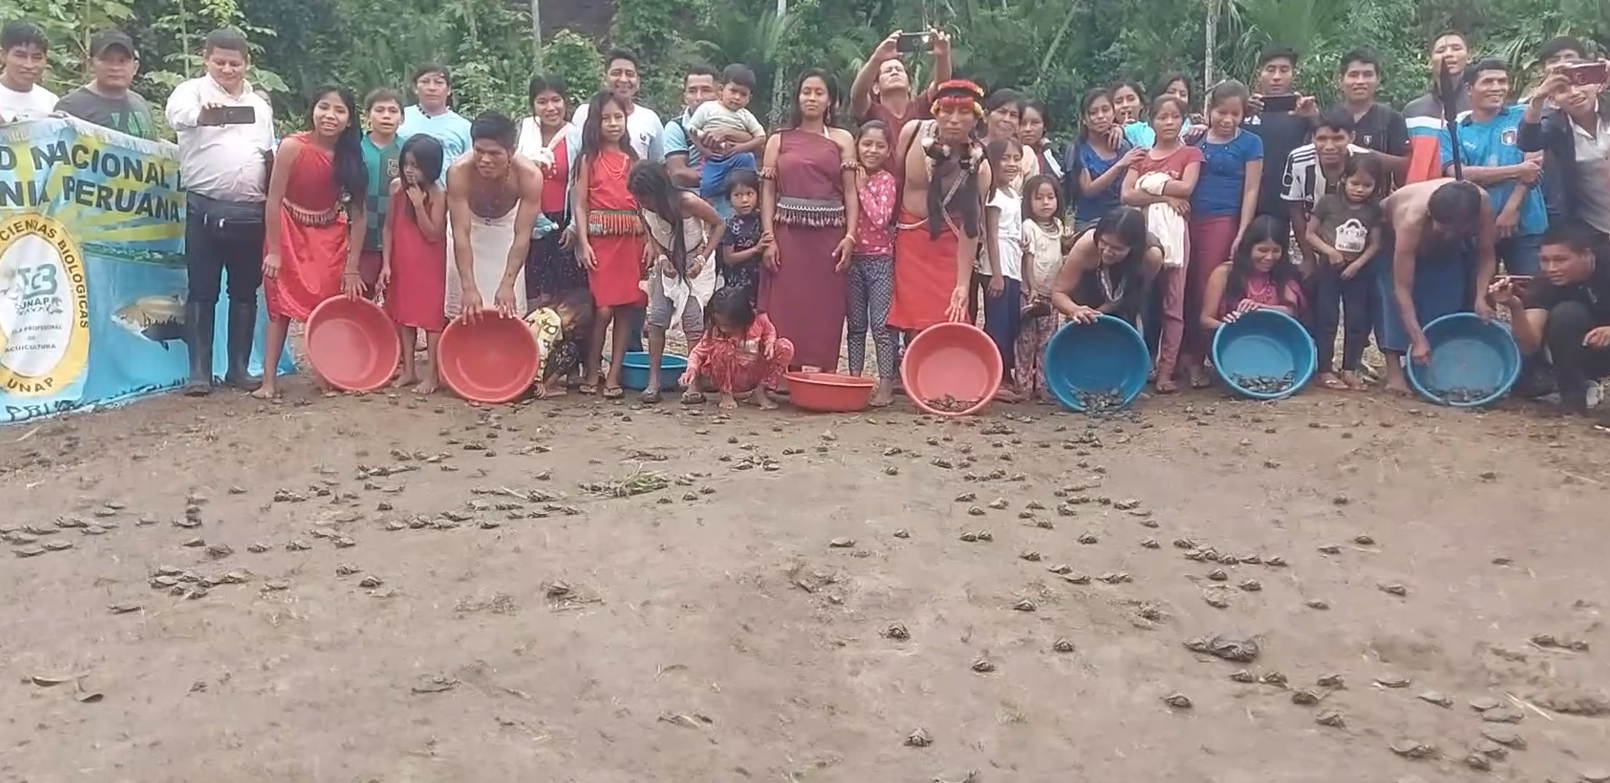 วีดีทัศน์ชุมชน: การปล่อยเต่าน้ำในลุ่มน้ำกันเกม เขตแดนโมโรนา แห่งประชาชาติวัมปิส